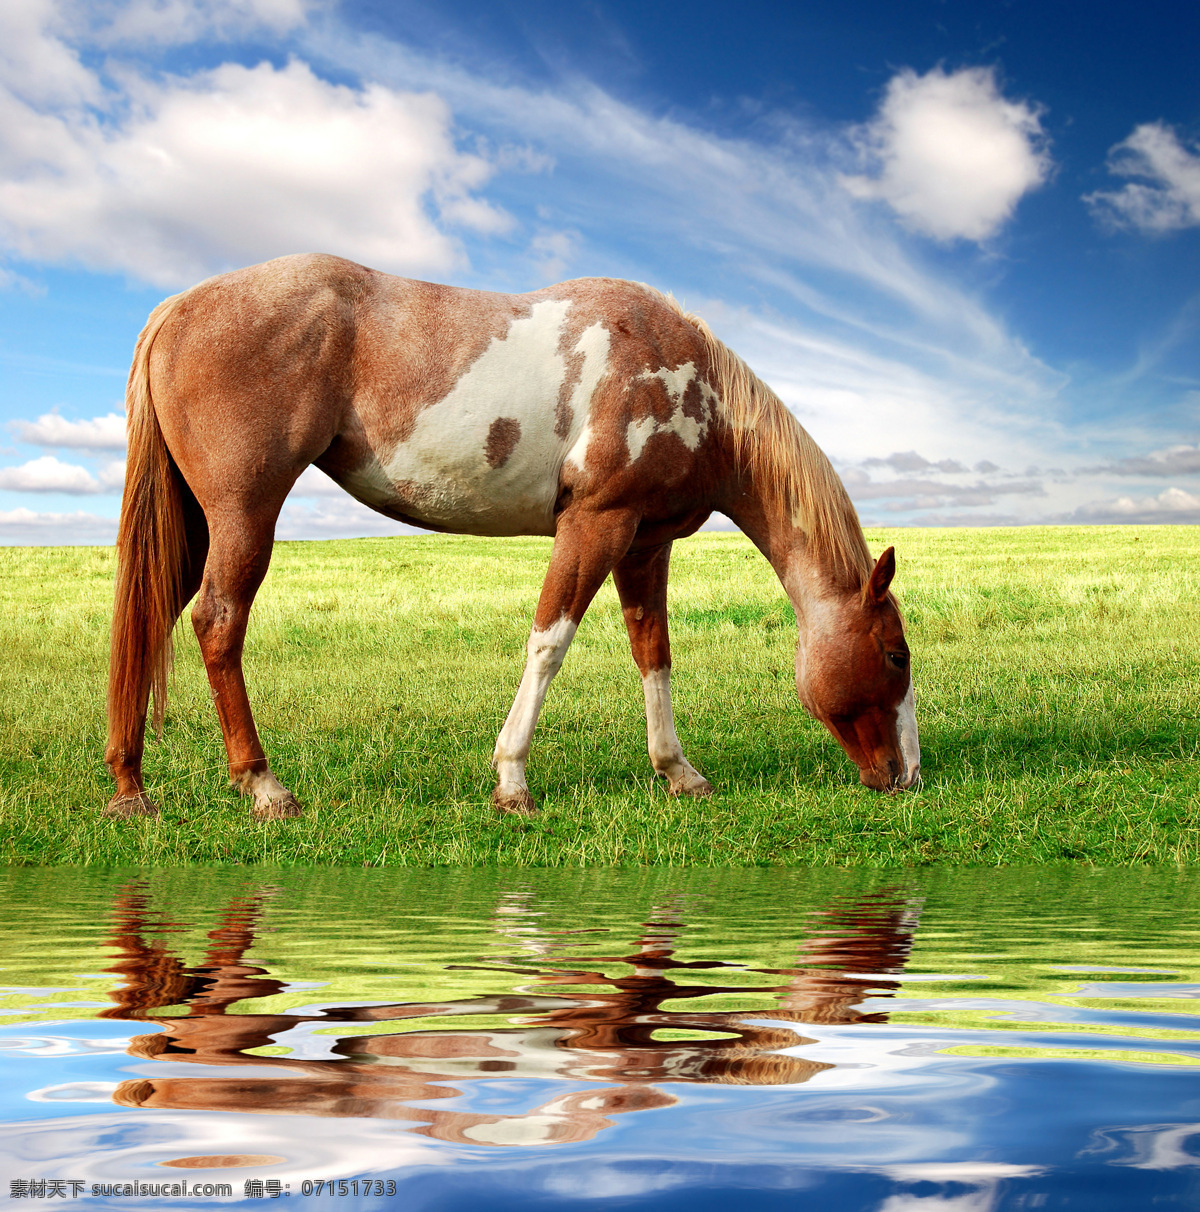 草原 上 吃 草 骏马 马 马匹 吃草 草地 绿地 清水 大自然 自然风光 动物 摄影图库 高清图片 陆地动物 生物世界